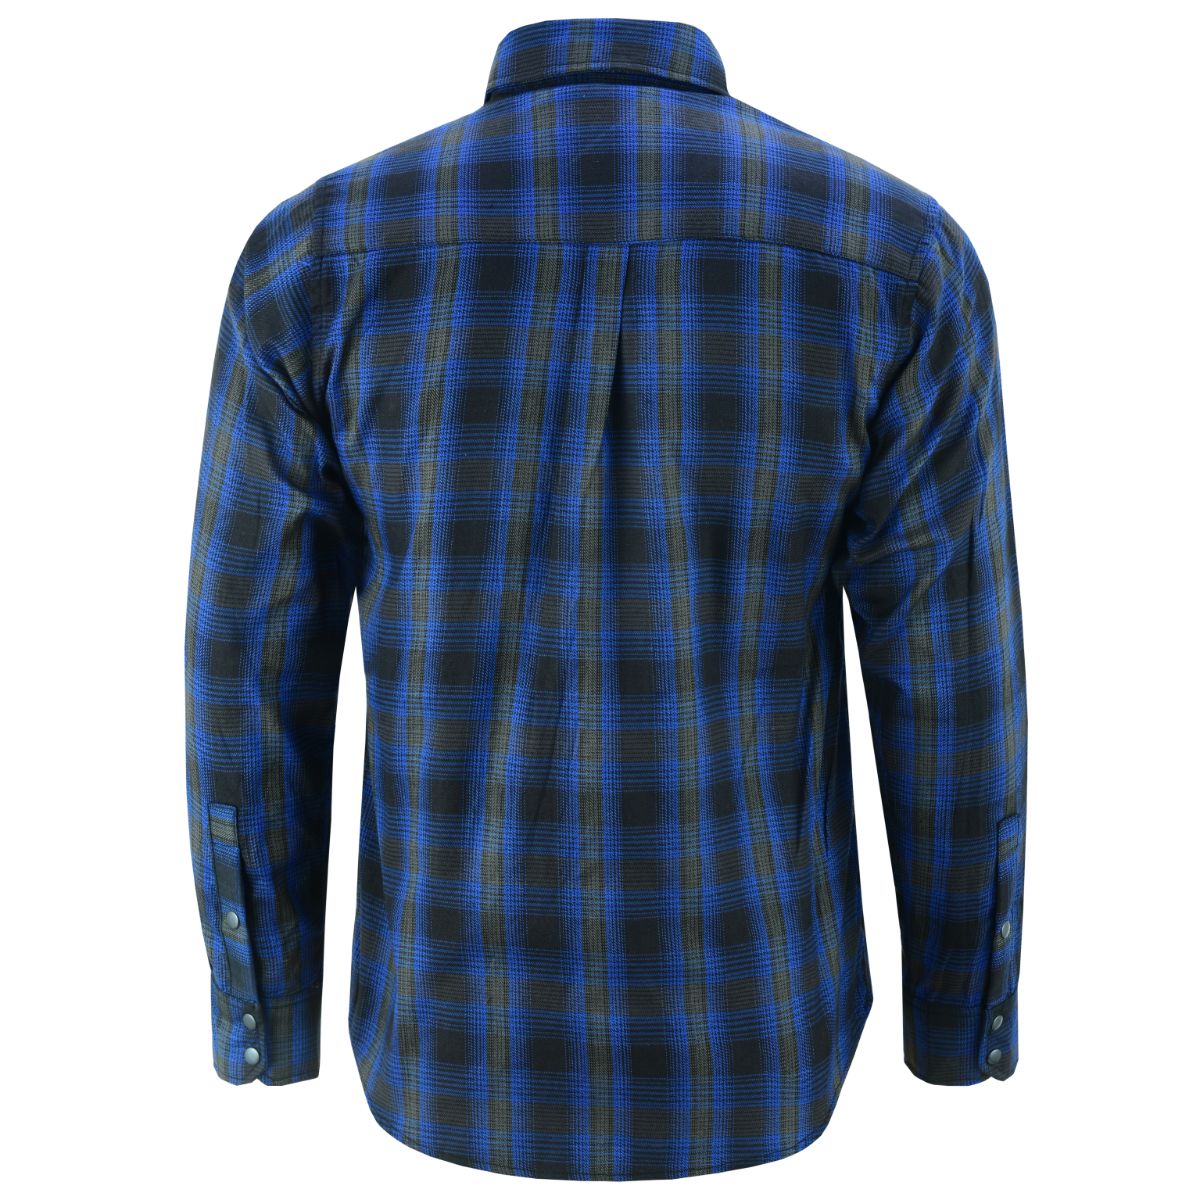 Flannel Shirt - Daze Blue and Black